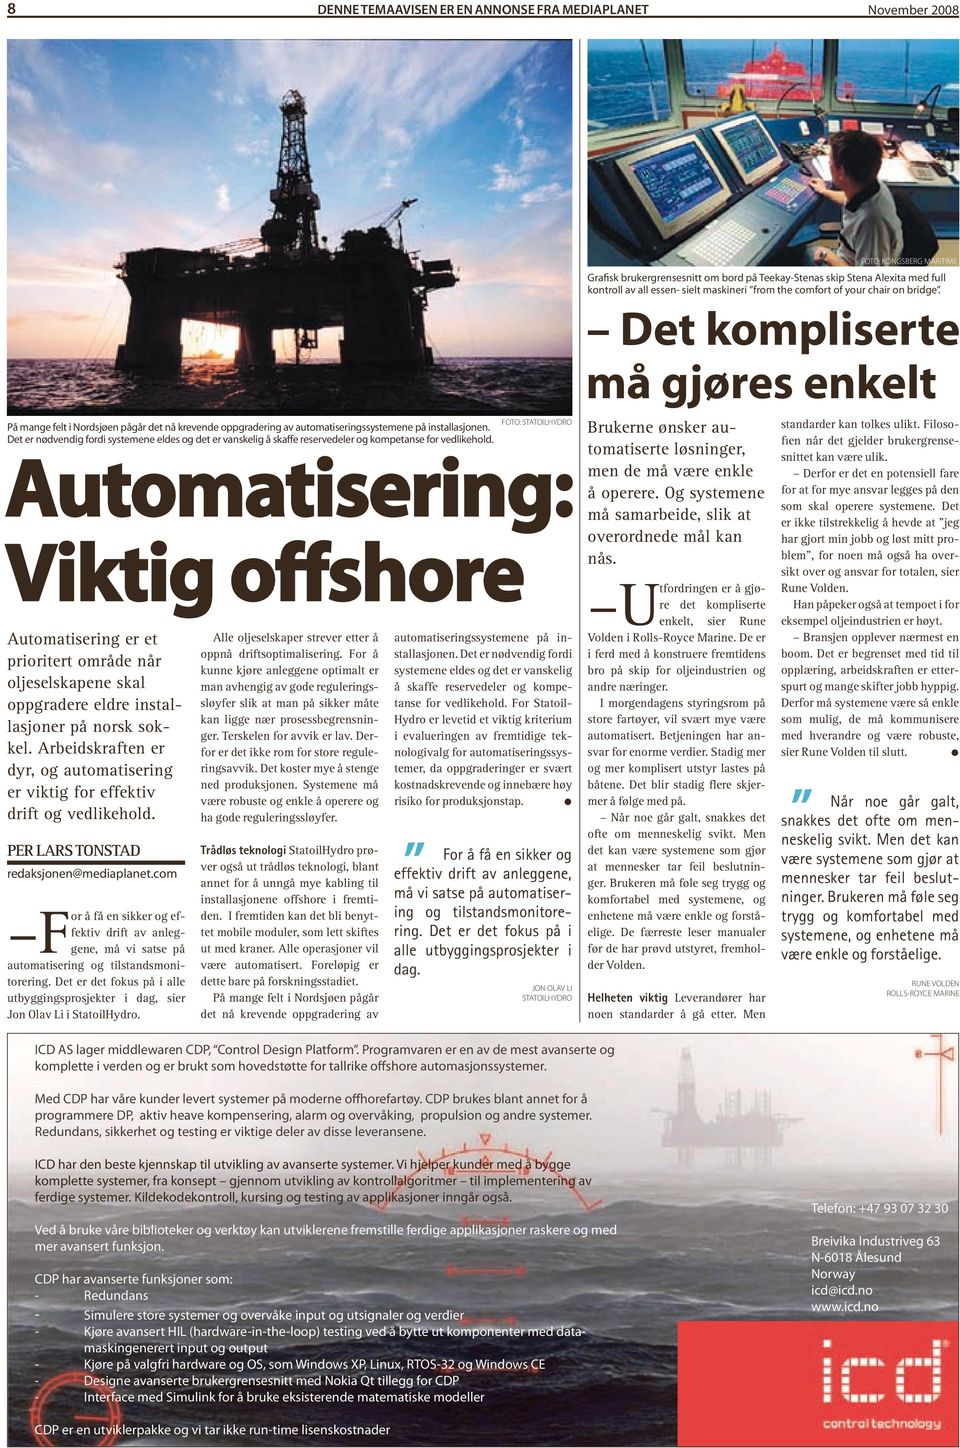 FOtO: StAtOilhydrO Automatisering: Viktig offshore Automatisering er et prioritert område når oljeselskapene skal oppgradere eldre installasjoner på norsk sokkel.